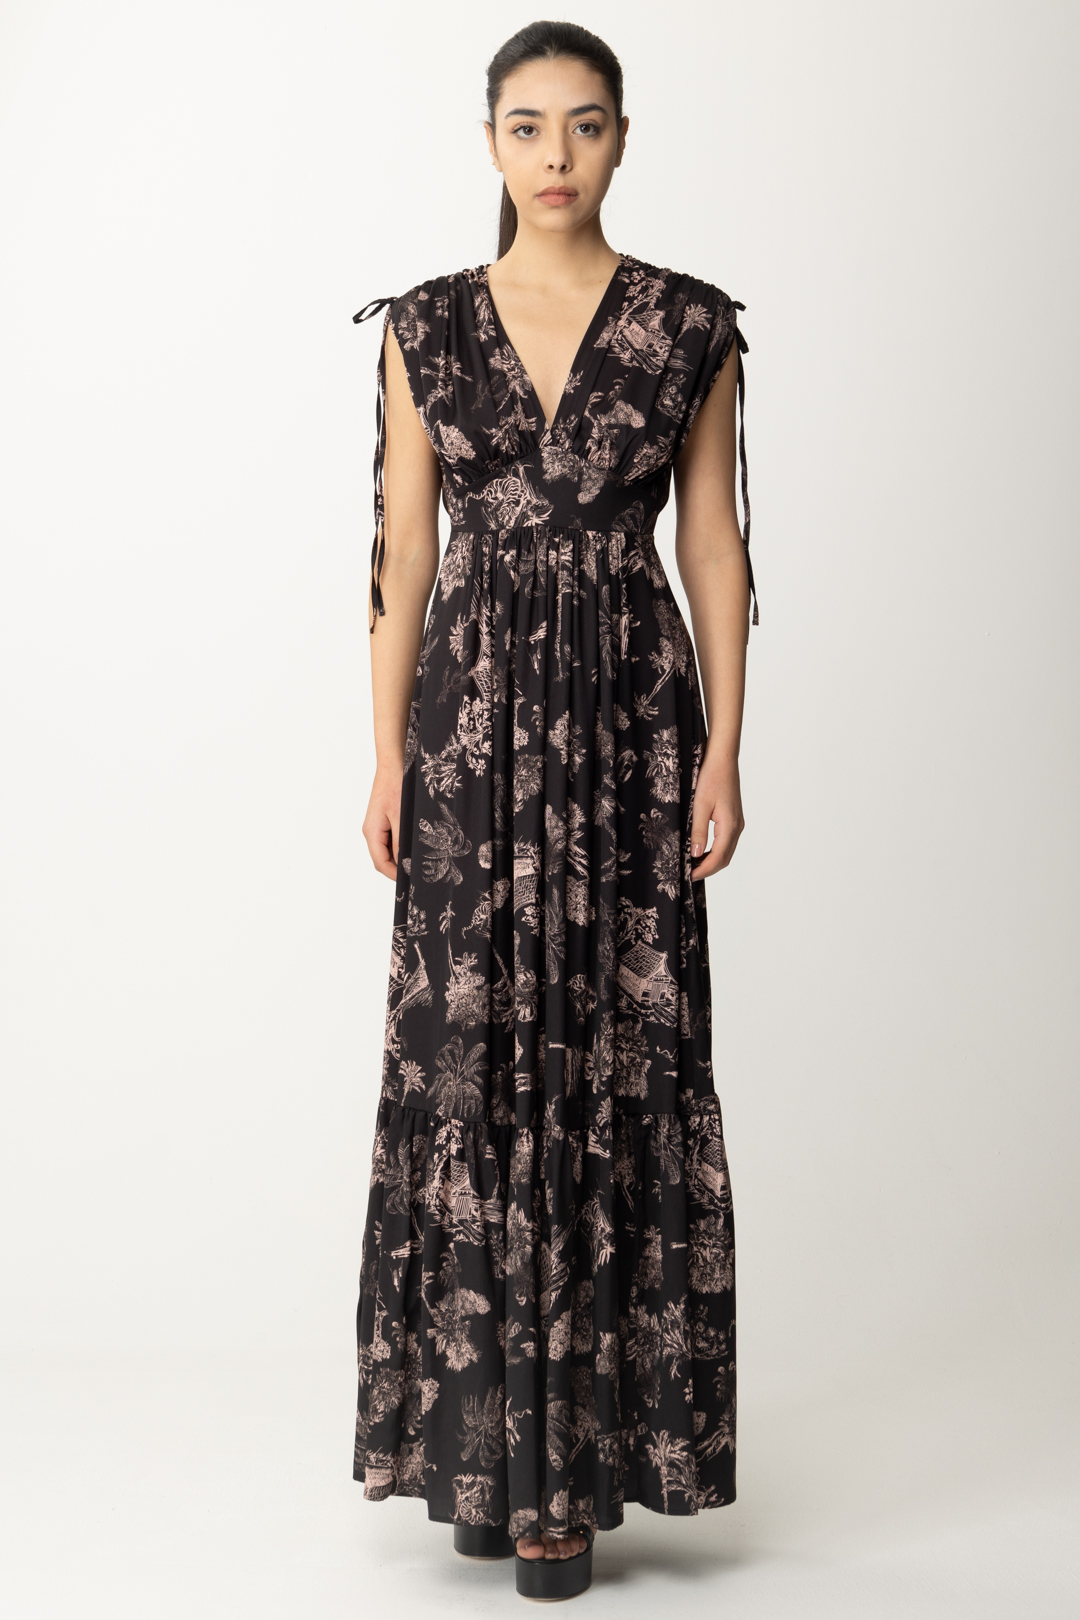 Vorschau: Aniye By Langes bedrucktes Maddy-Kleid BLACK HAWAII